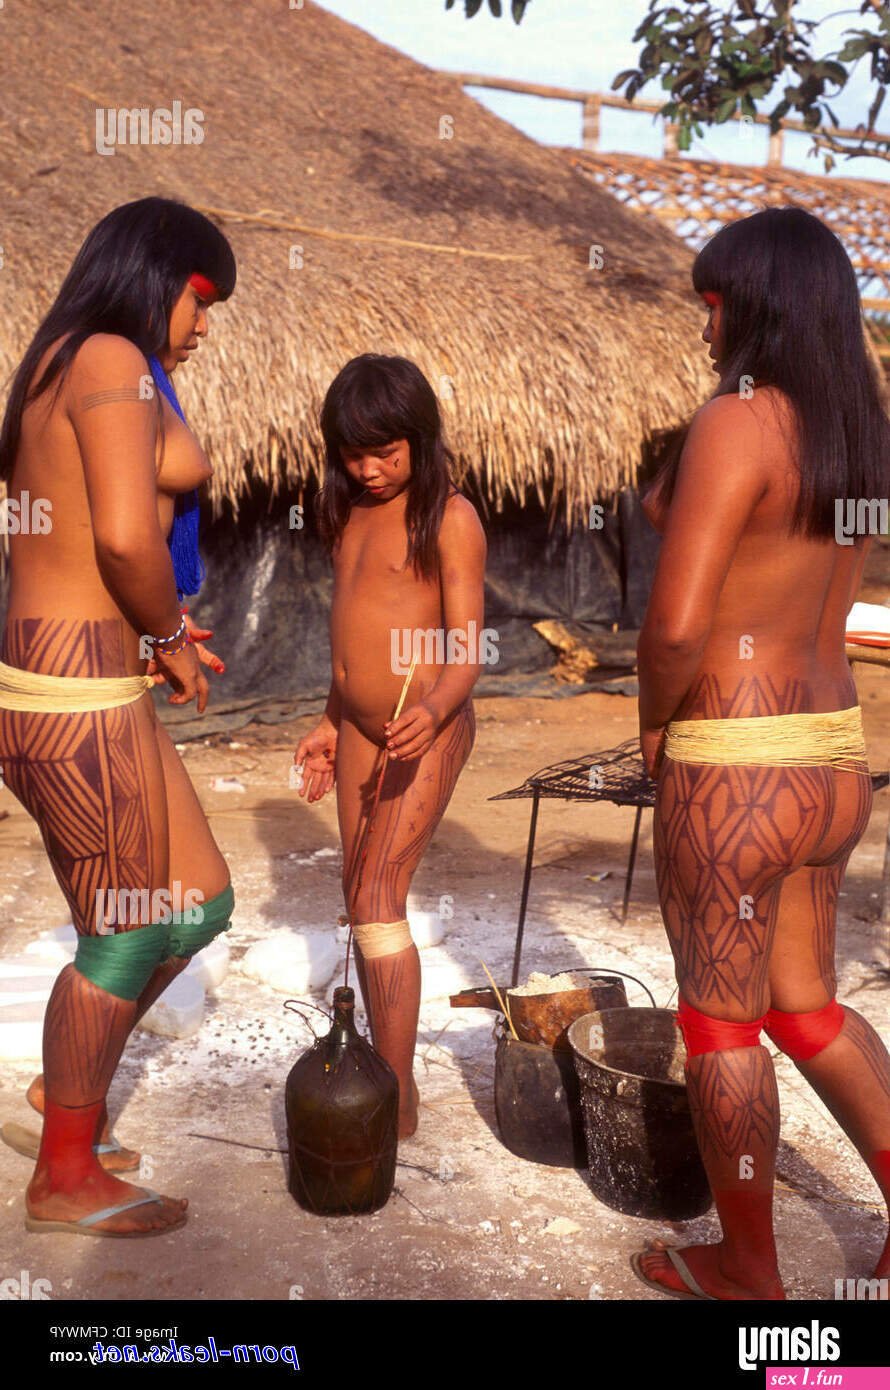 890px x 1390px - Xingu Porn - 27 photos